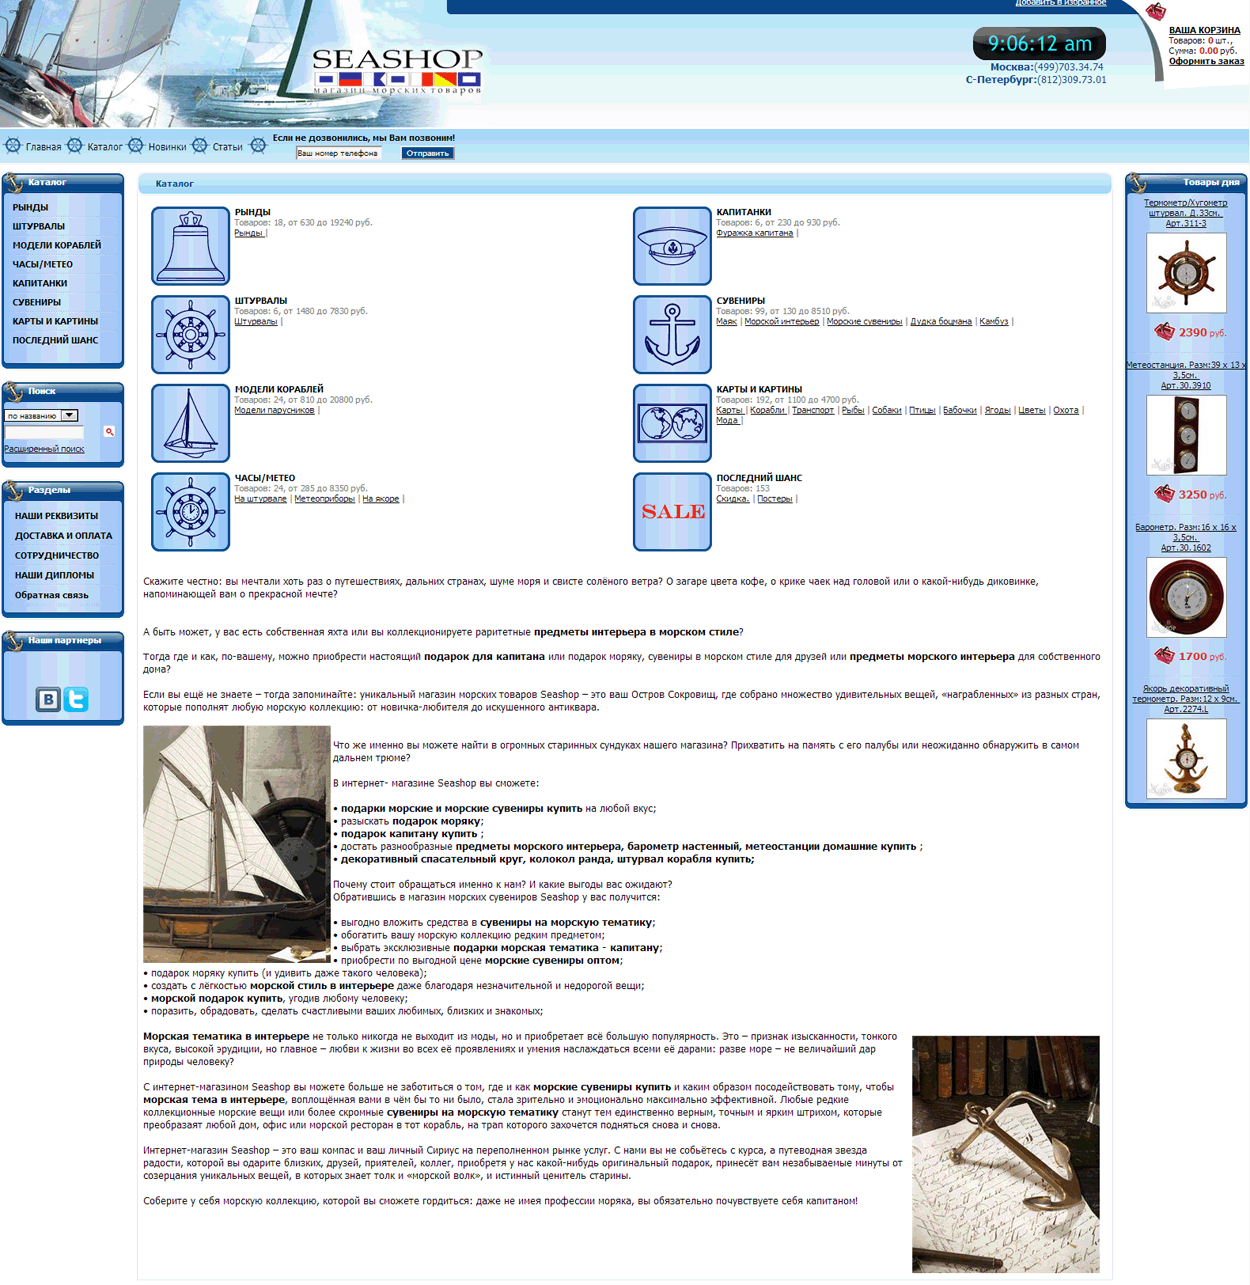 Cозданый интернет-магазин оборудования для яхт